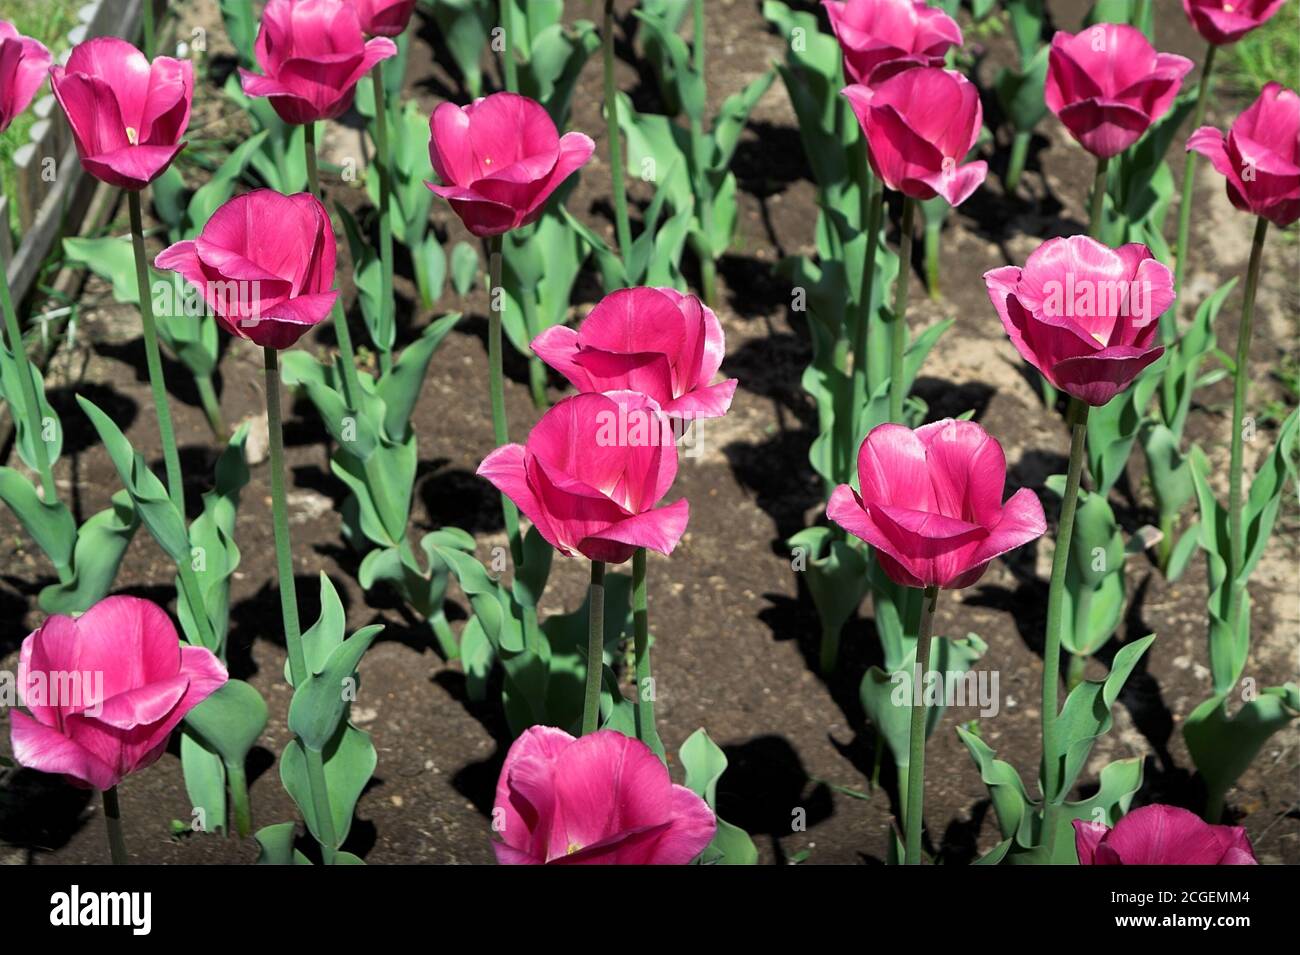 Poland, Polen; Tulipany (Tulipa L.); Red tulips growing in the garden in the ground. Rote Tulpen, die im Garten im Boden wachsen. 生長在地面的庭院裡的紅色鬱金香。 Stock Photo